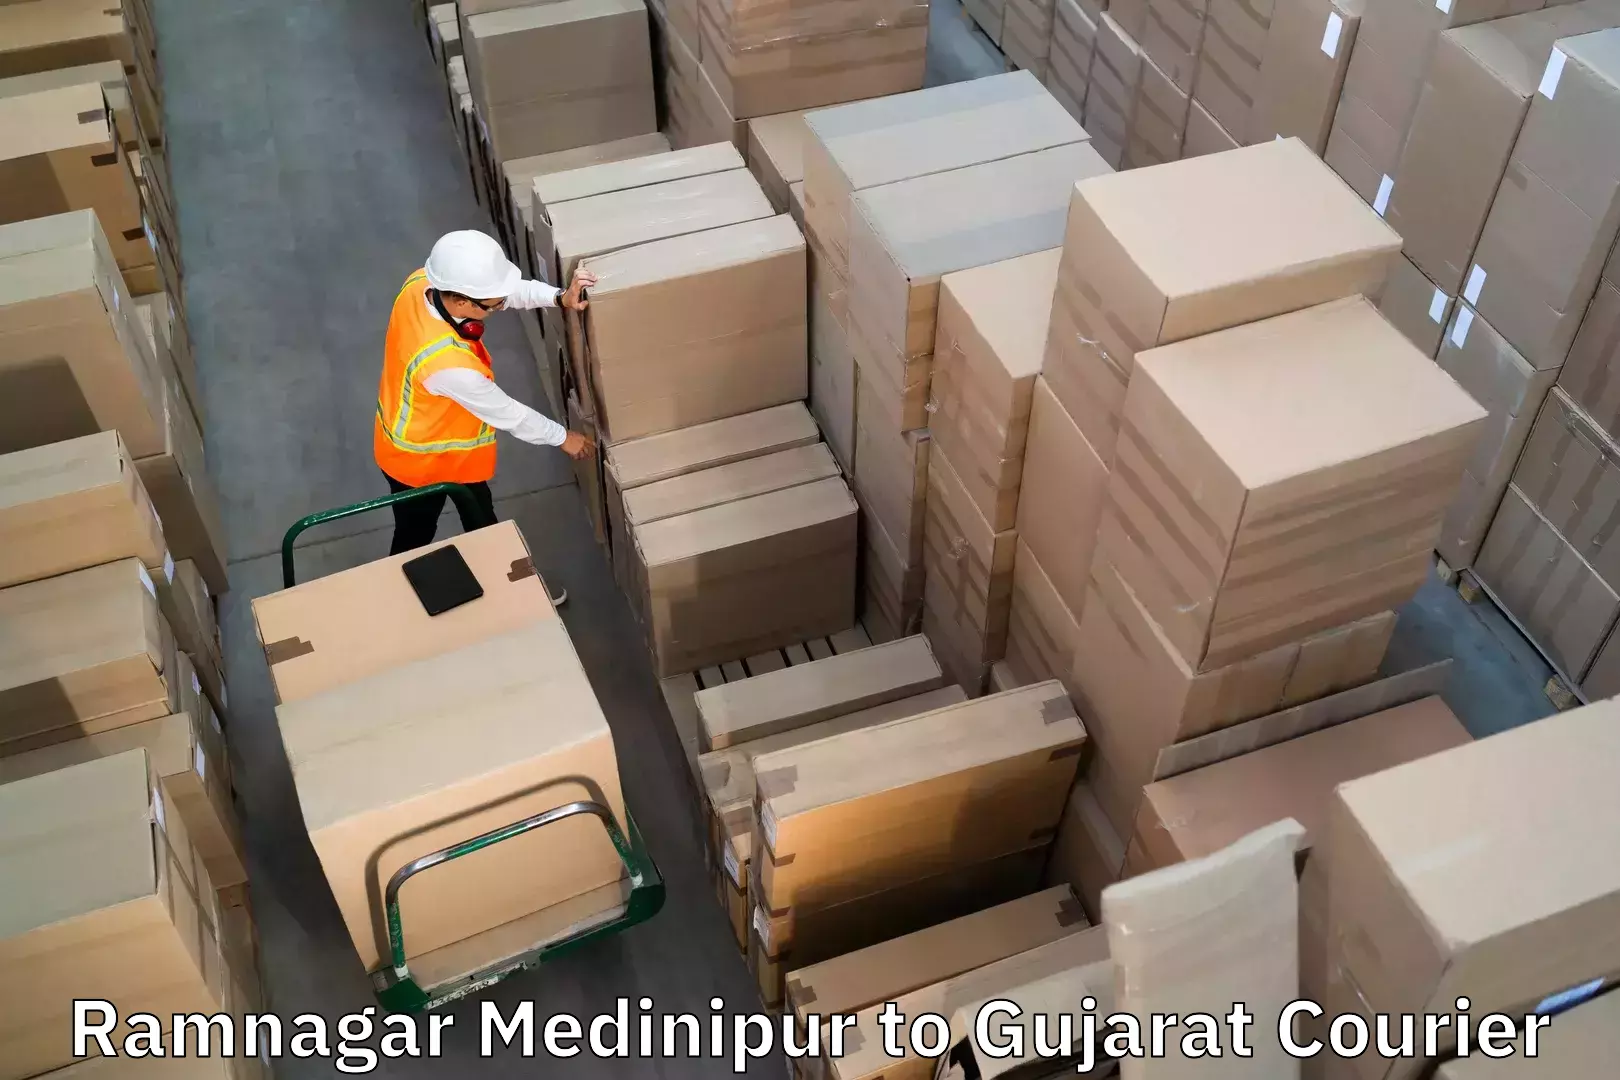 Baggage delivery estimate Ramnagar Medinipur to Dediapada